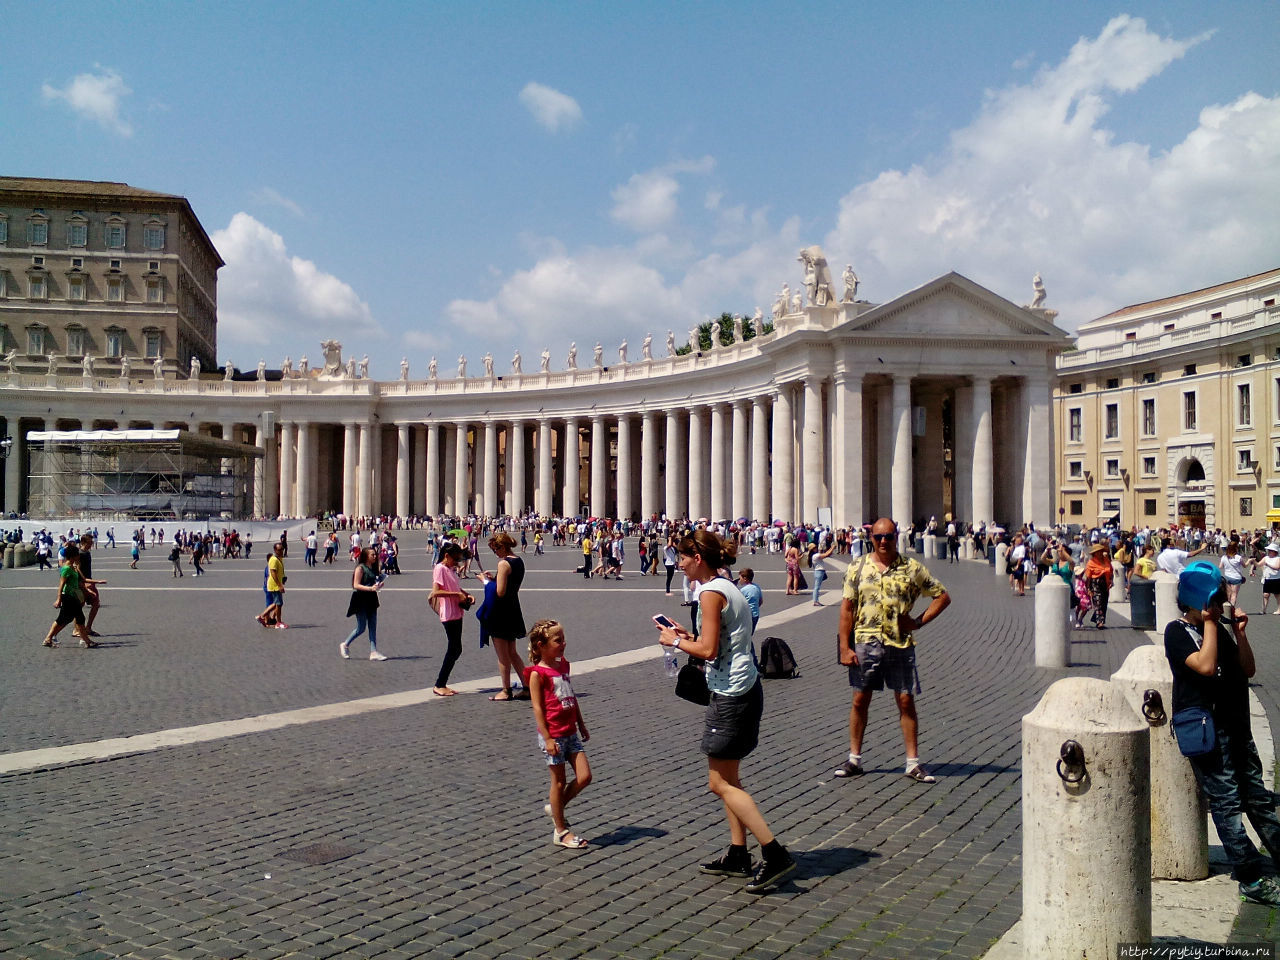 А вот какая очередь желающих попасть в Ватикан.
На фото на заднем плане